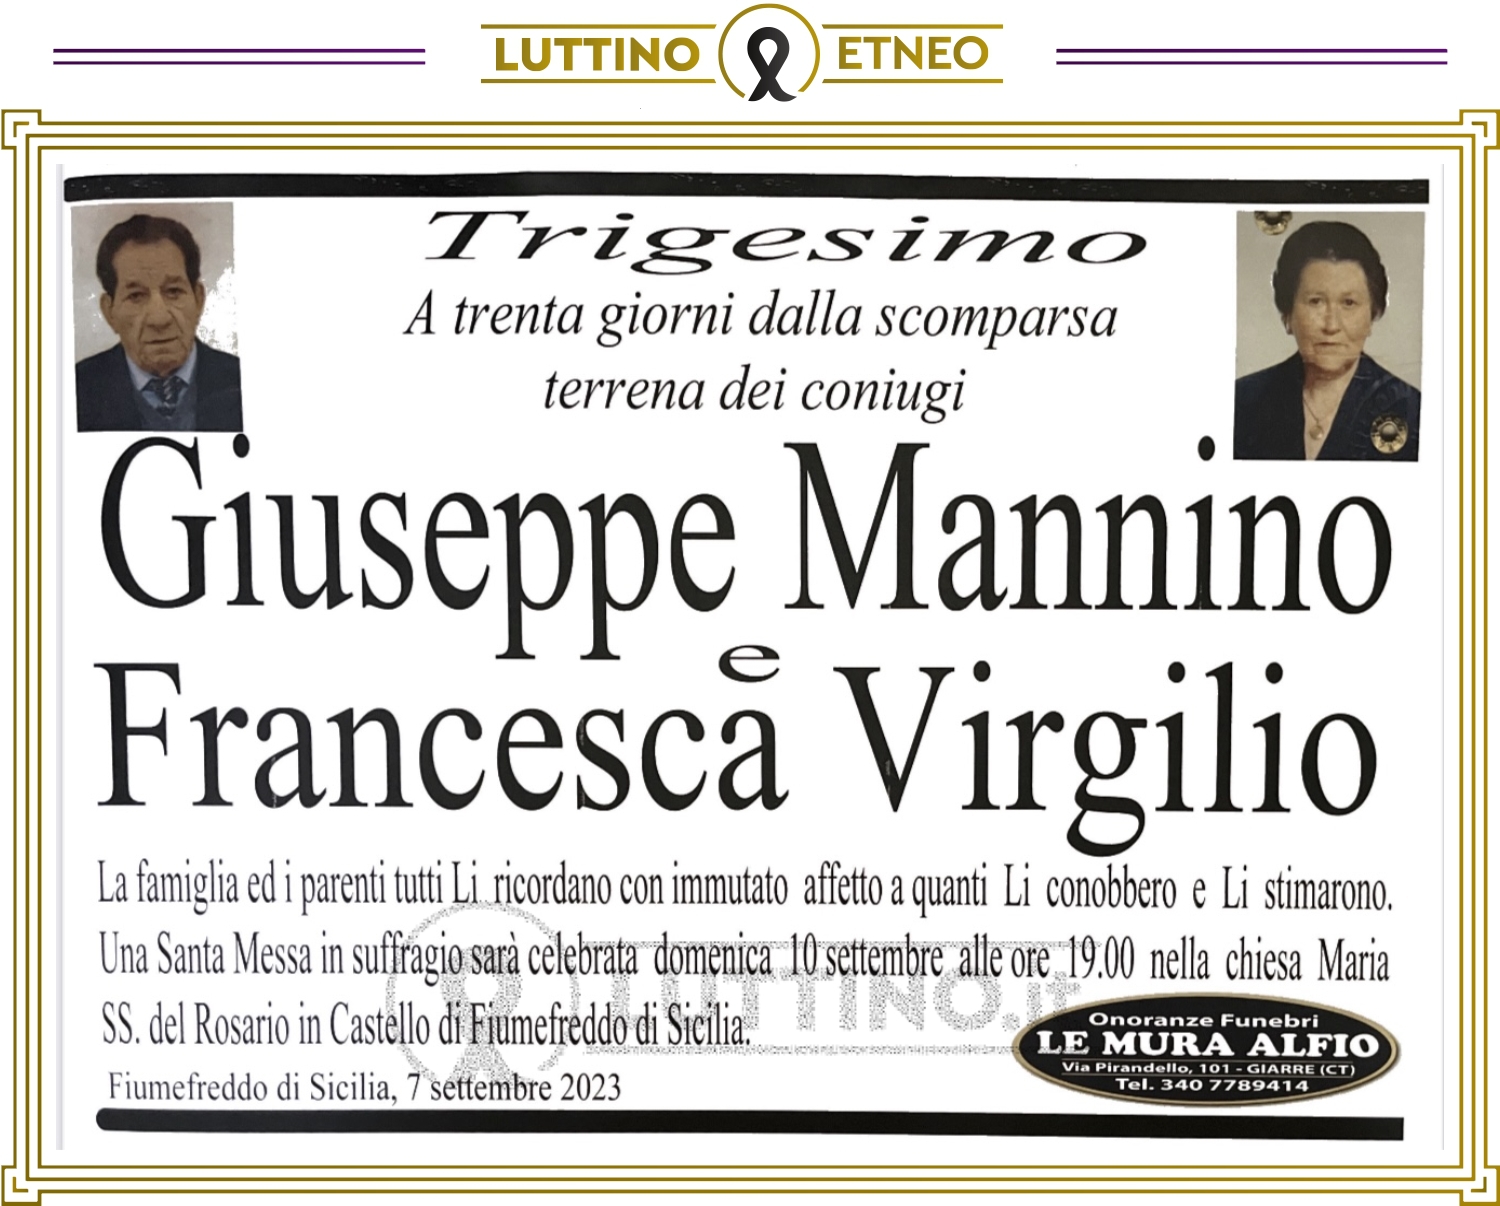 Francesca Virgilio e Giuseppe Mannino